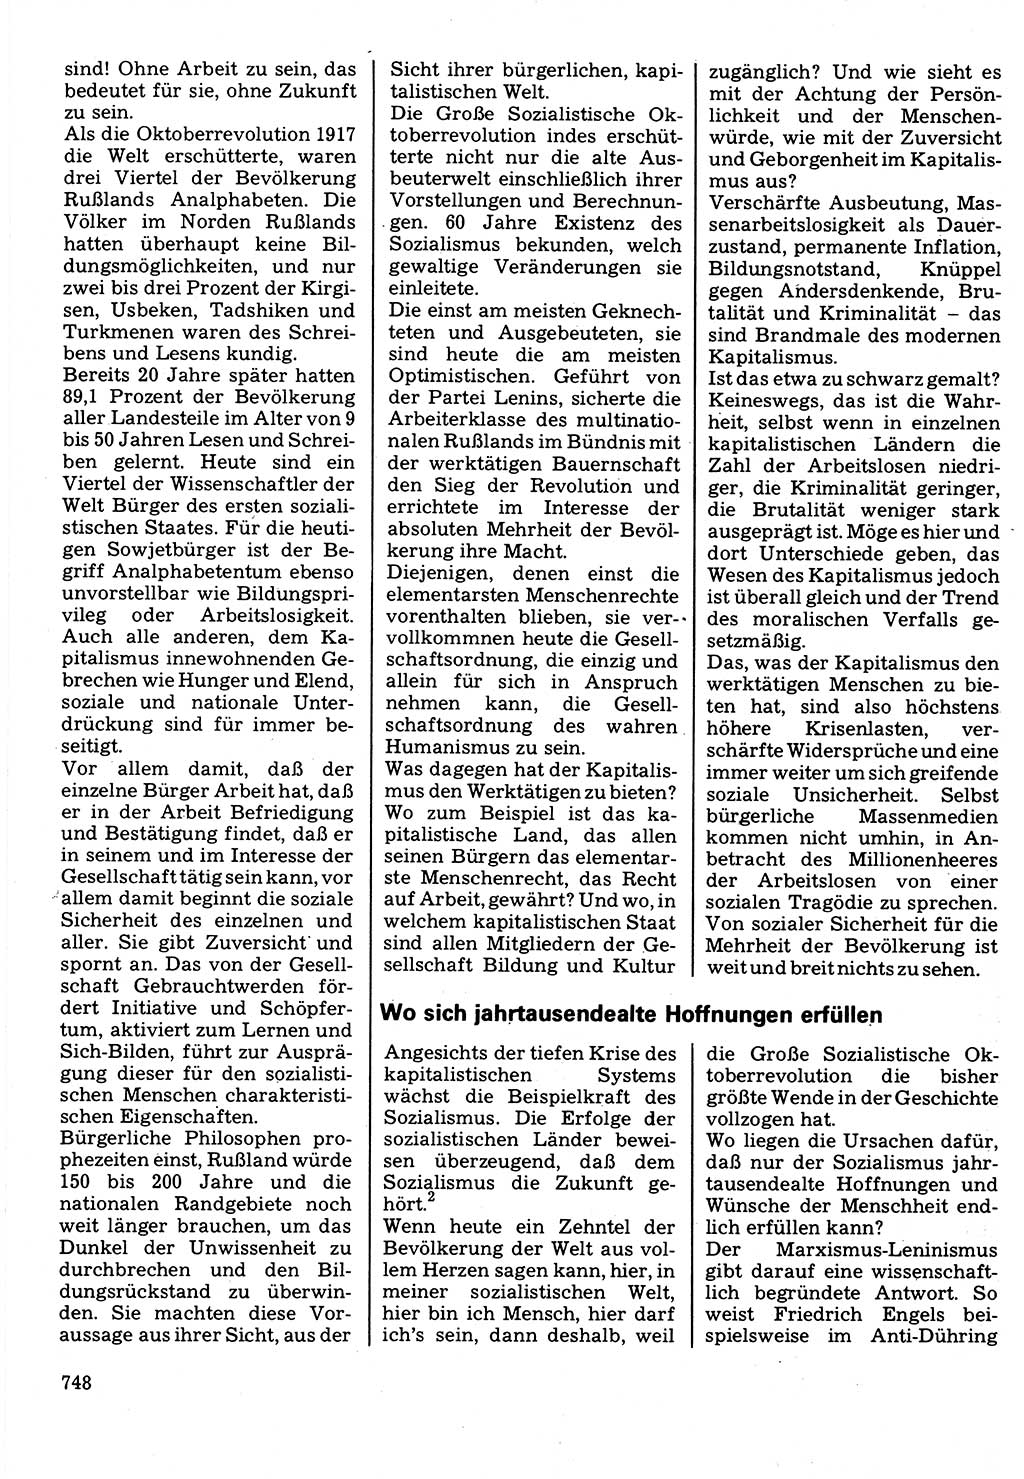 Neuer Weg (NW), Organ des Zentralkomitees (ZK) der SED (Sozialistische Einheitspartei Deutschlands) für Fragen des Parteilebens, 32. Jahrgang [Deutsche Demokratische Republik (DDR)] 1977, Seite 748 (NW ZK SED DDR 1977, S. 748)